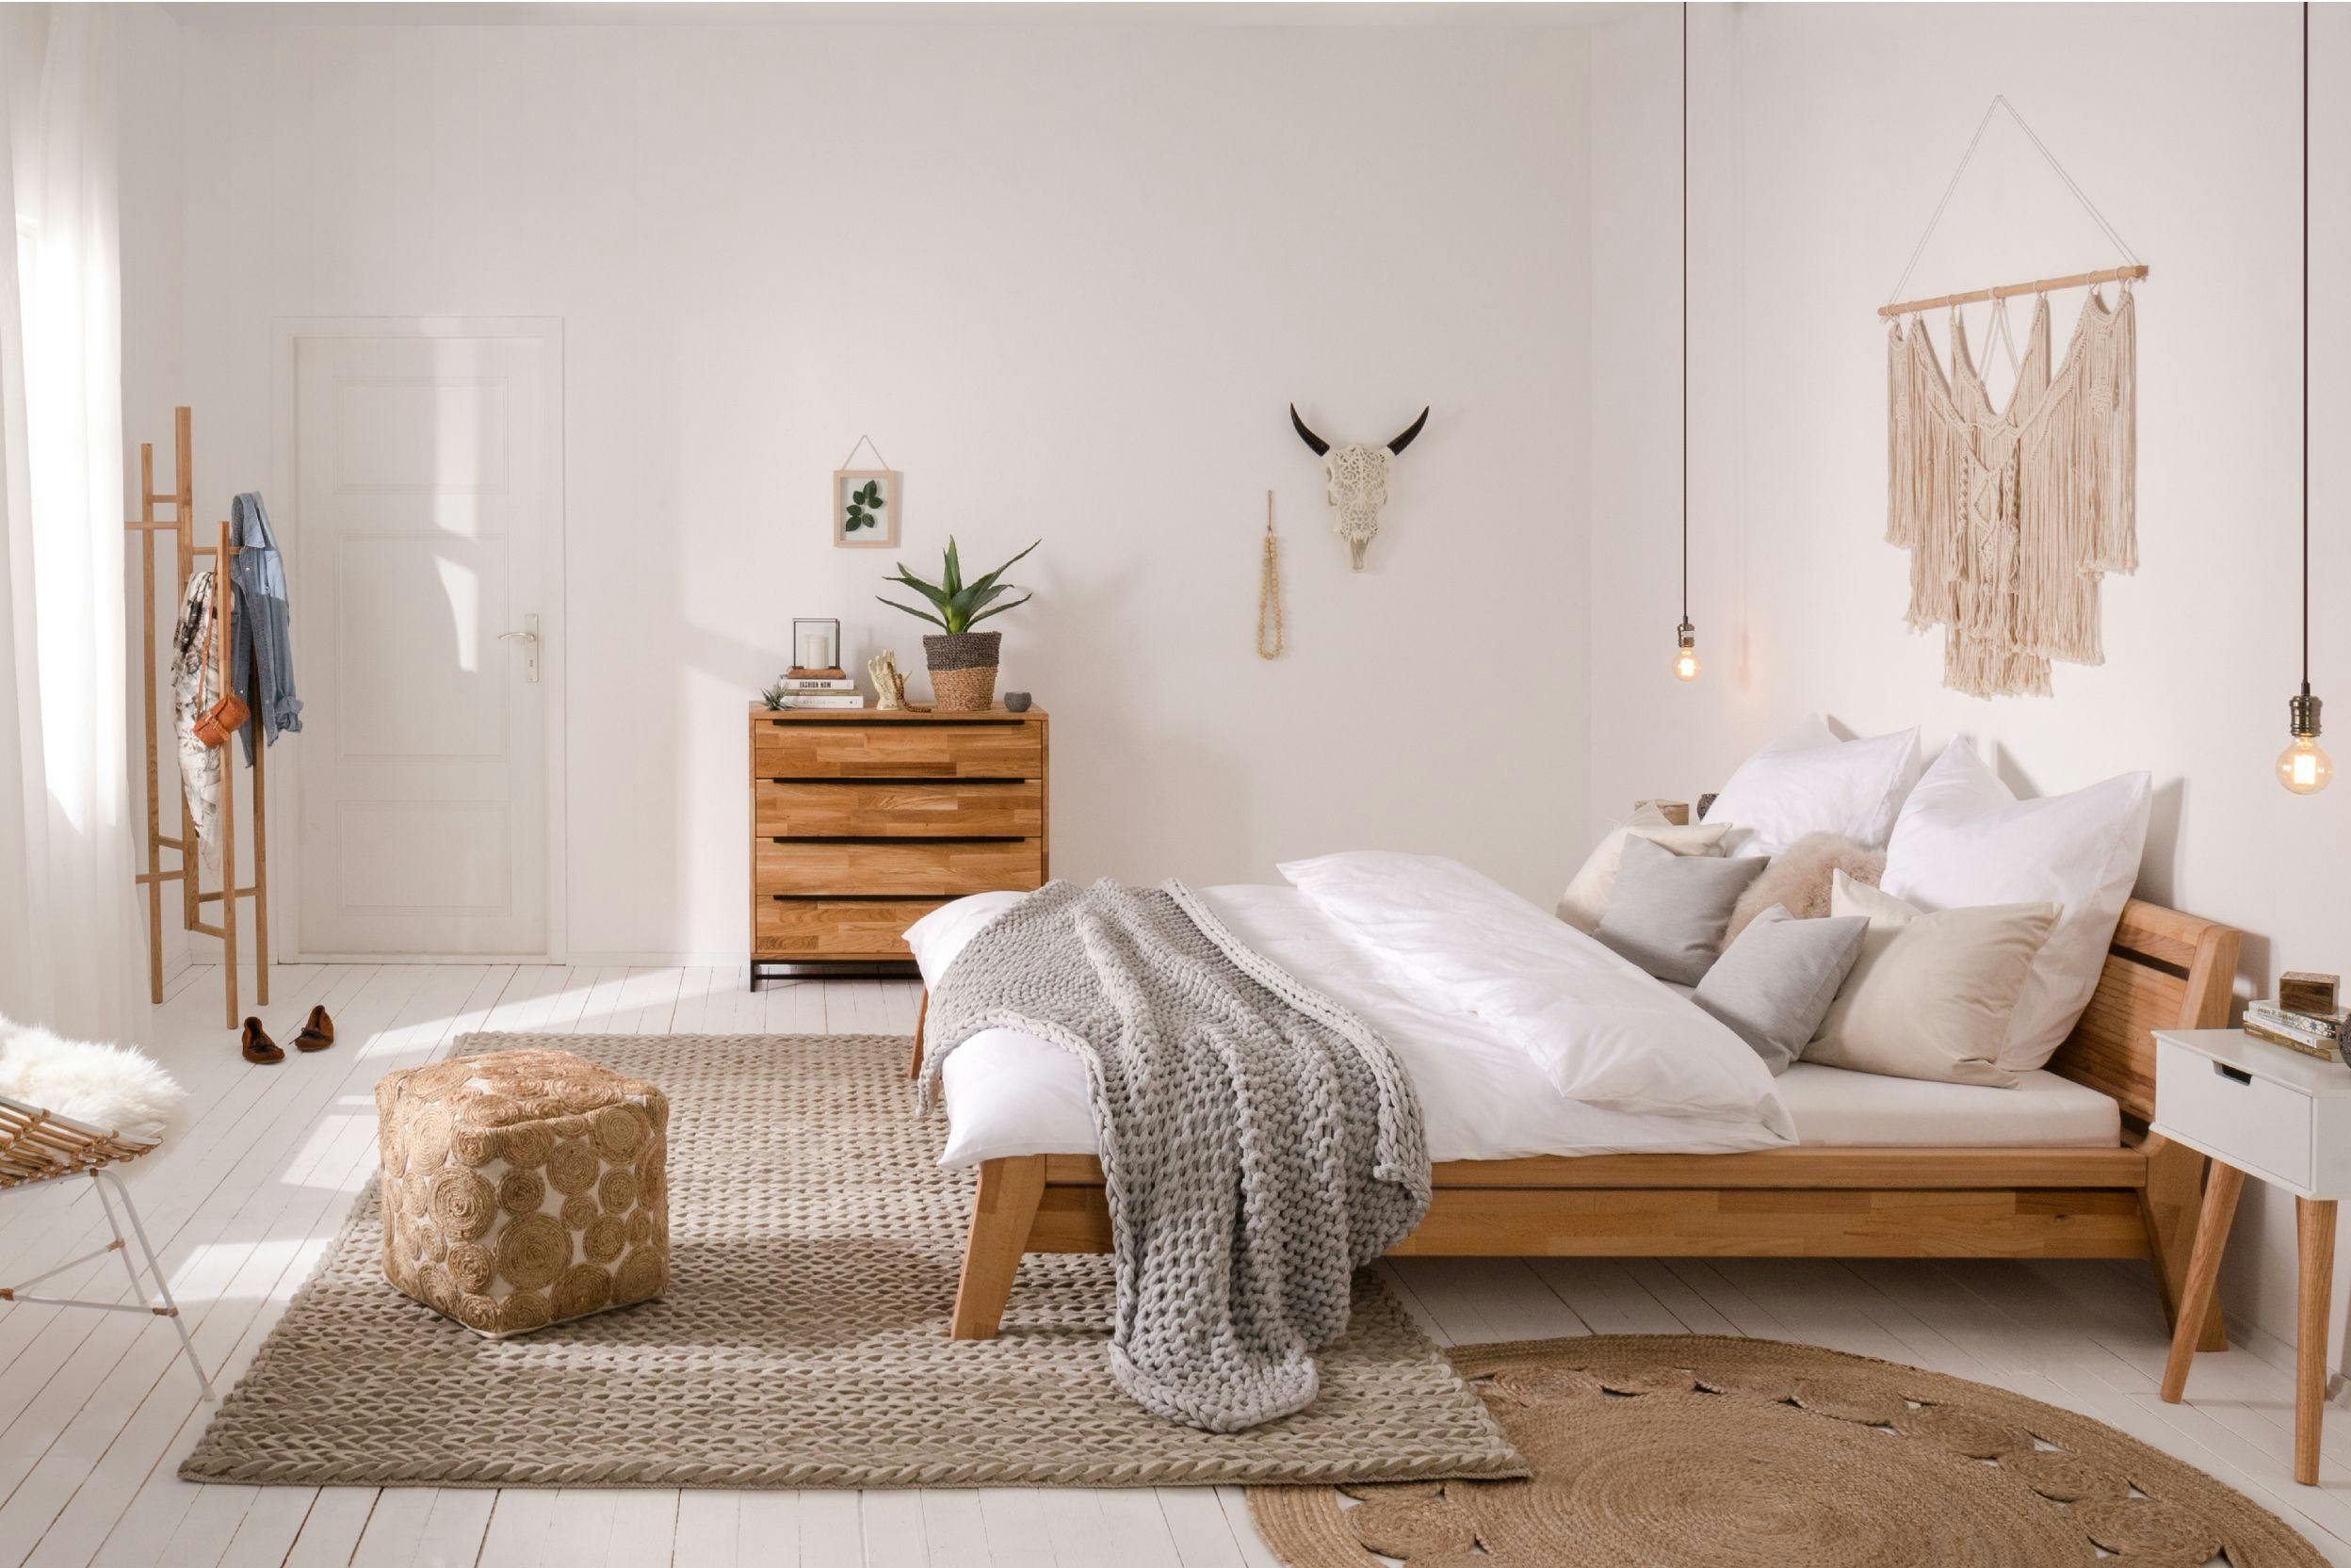 Harmonieuze woonkamer met natuurlijke kleuren, houten bed, kast, vloerkleden, wit beddengoed